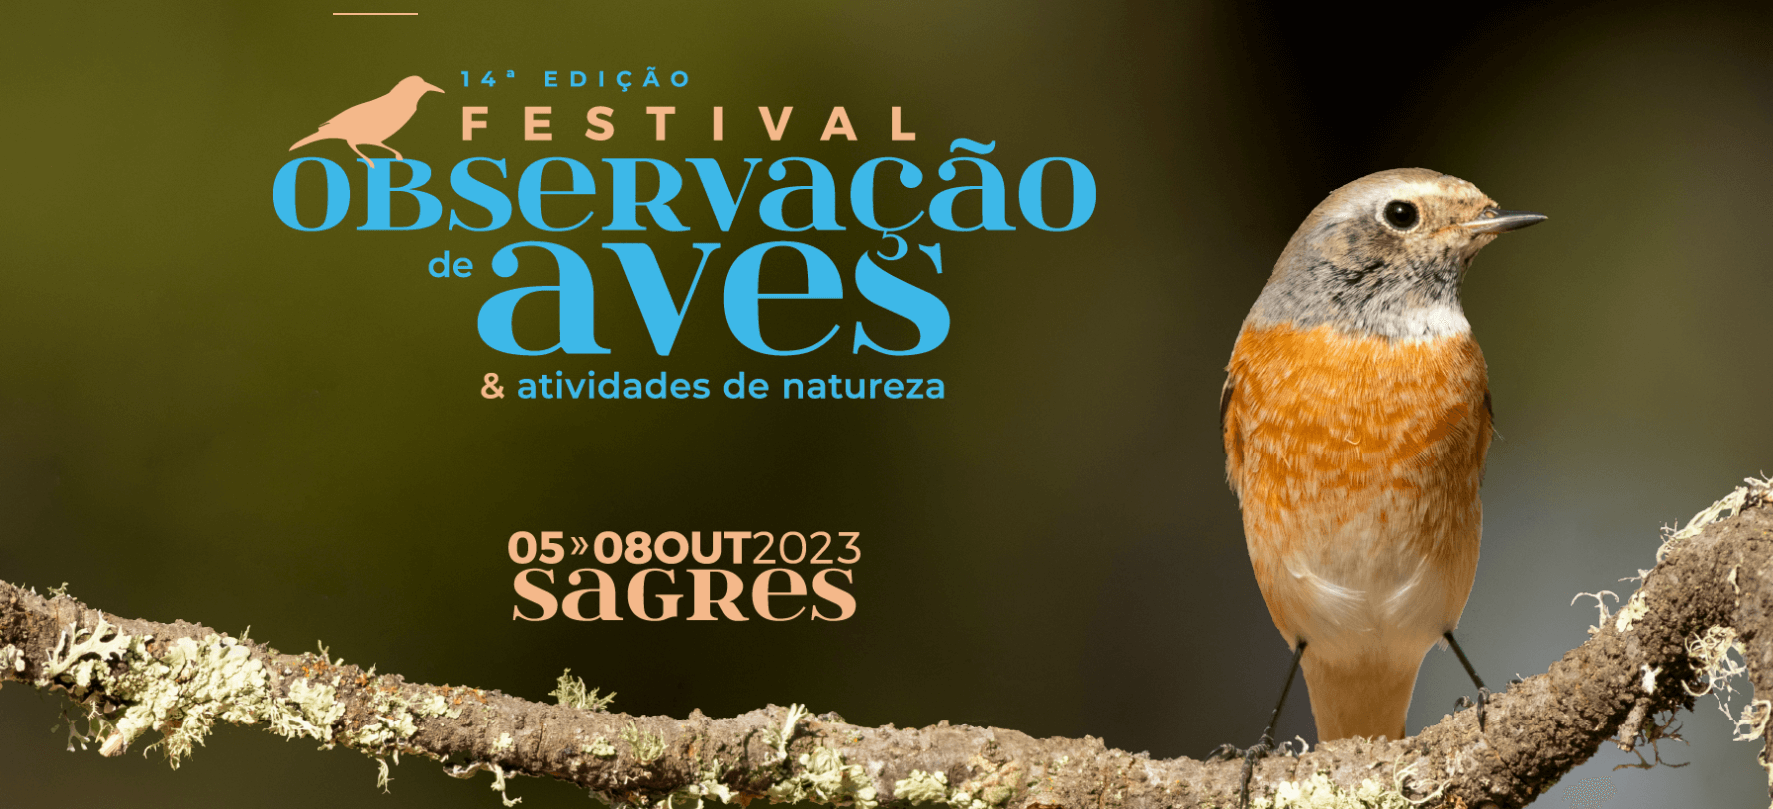 фестиваль наблюдения за птицами в Португалии